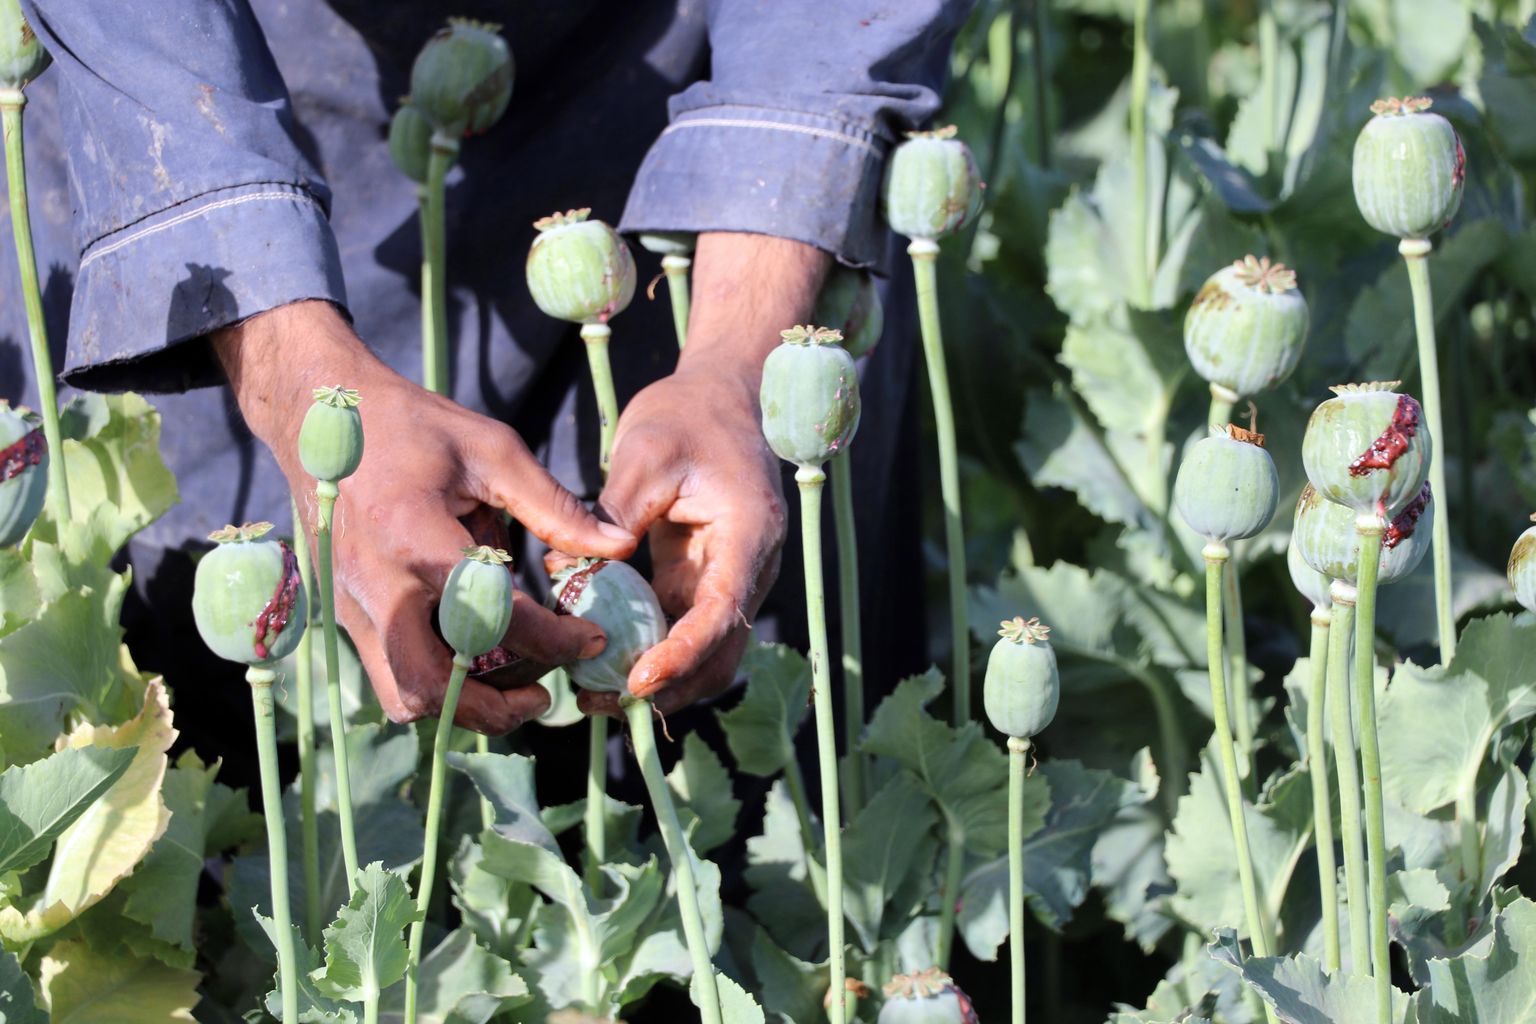 Oopiumimagunate kuprad Afganistanis Kandaharis 29. märtsil 2022. Poolvalminud kuparde piimmahla nimetatakse oopiumiks